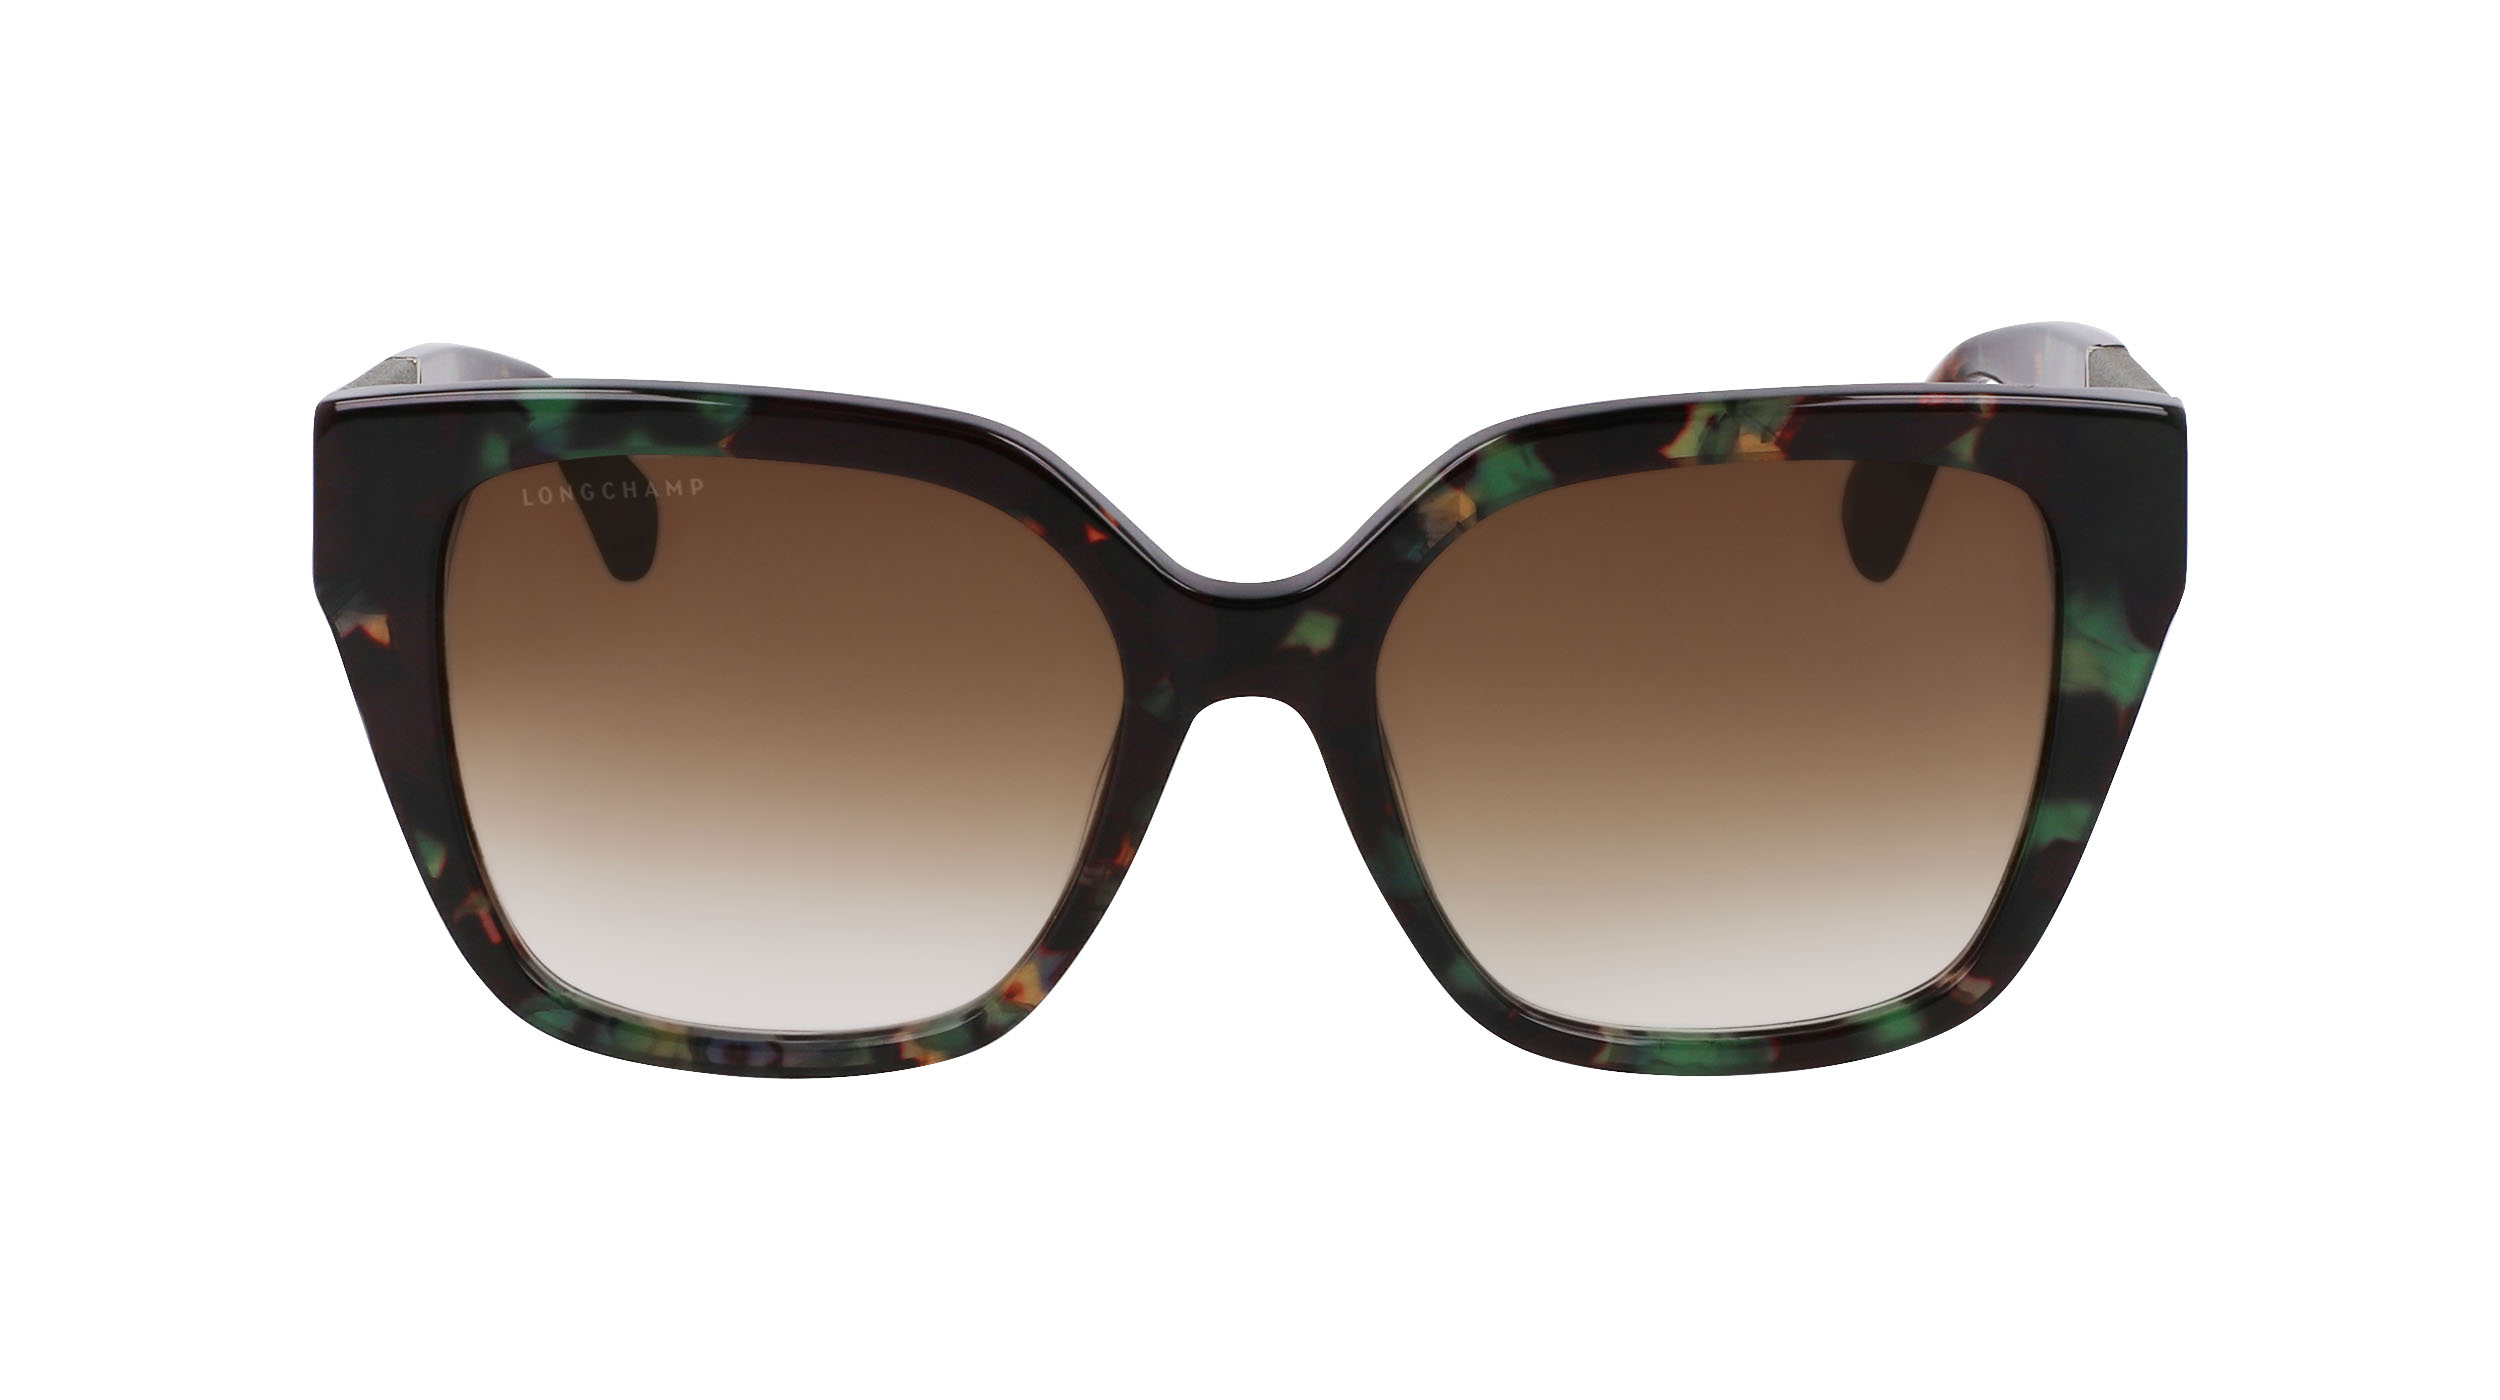 Paire de lunettes de soleil Longchamp Lo754sl couleur vert - Doyle